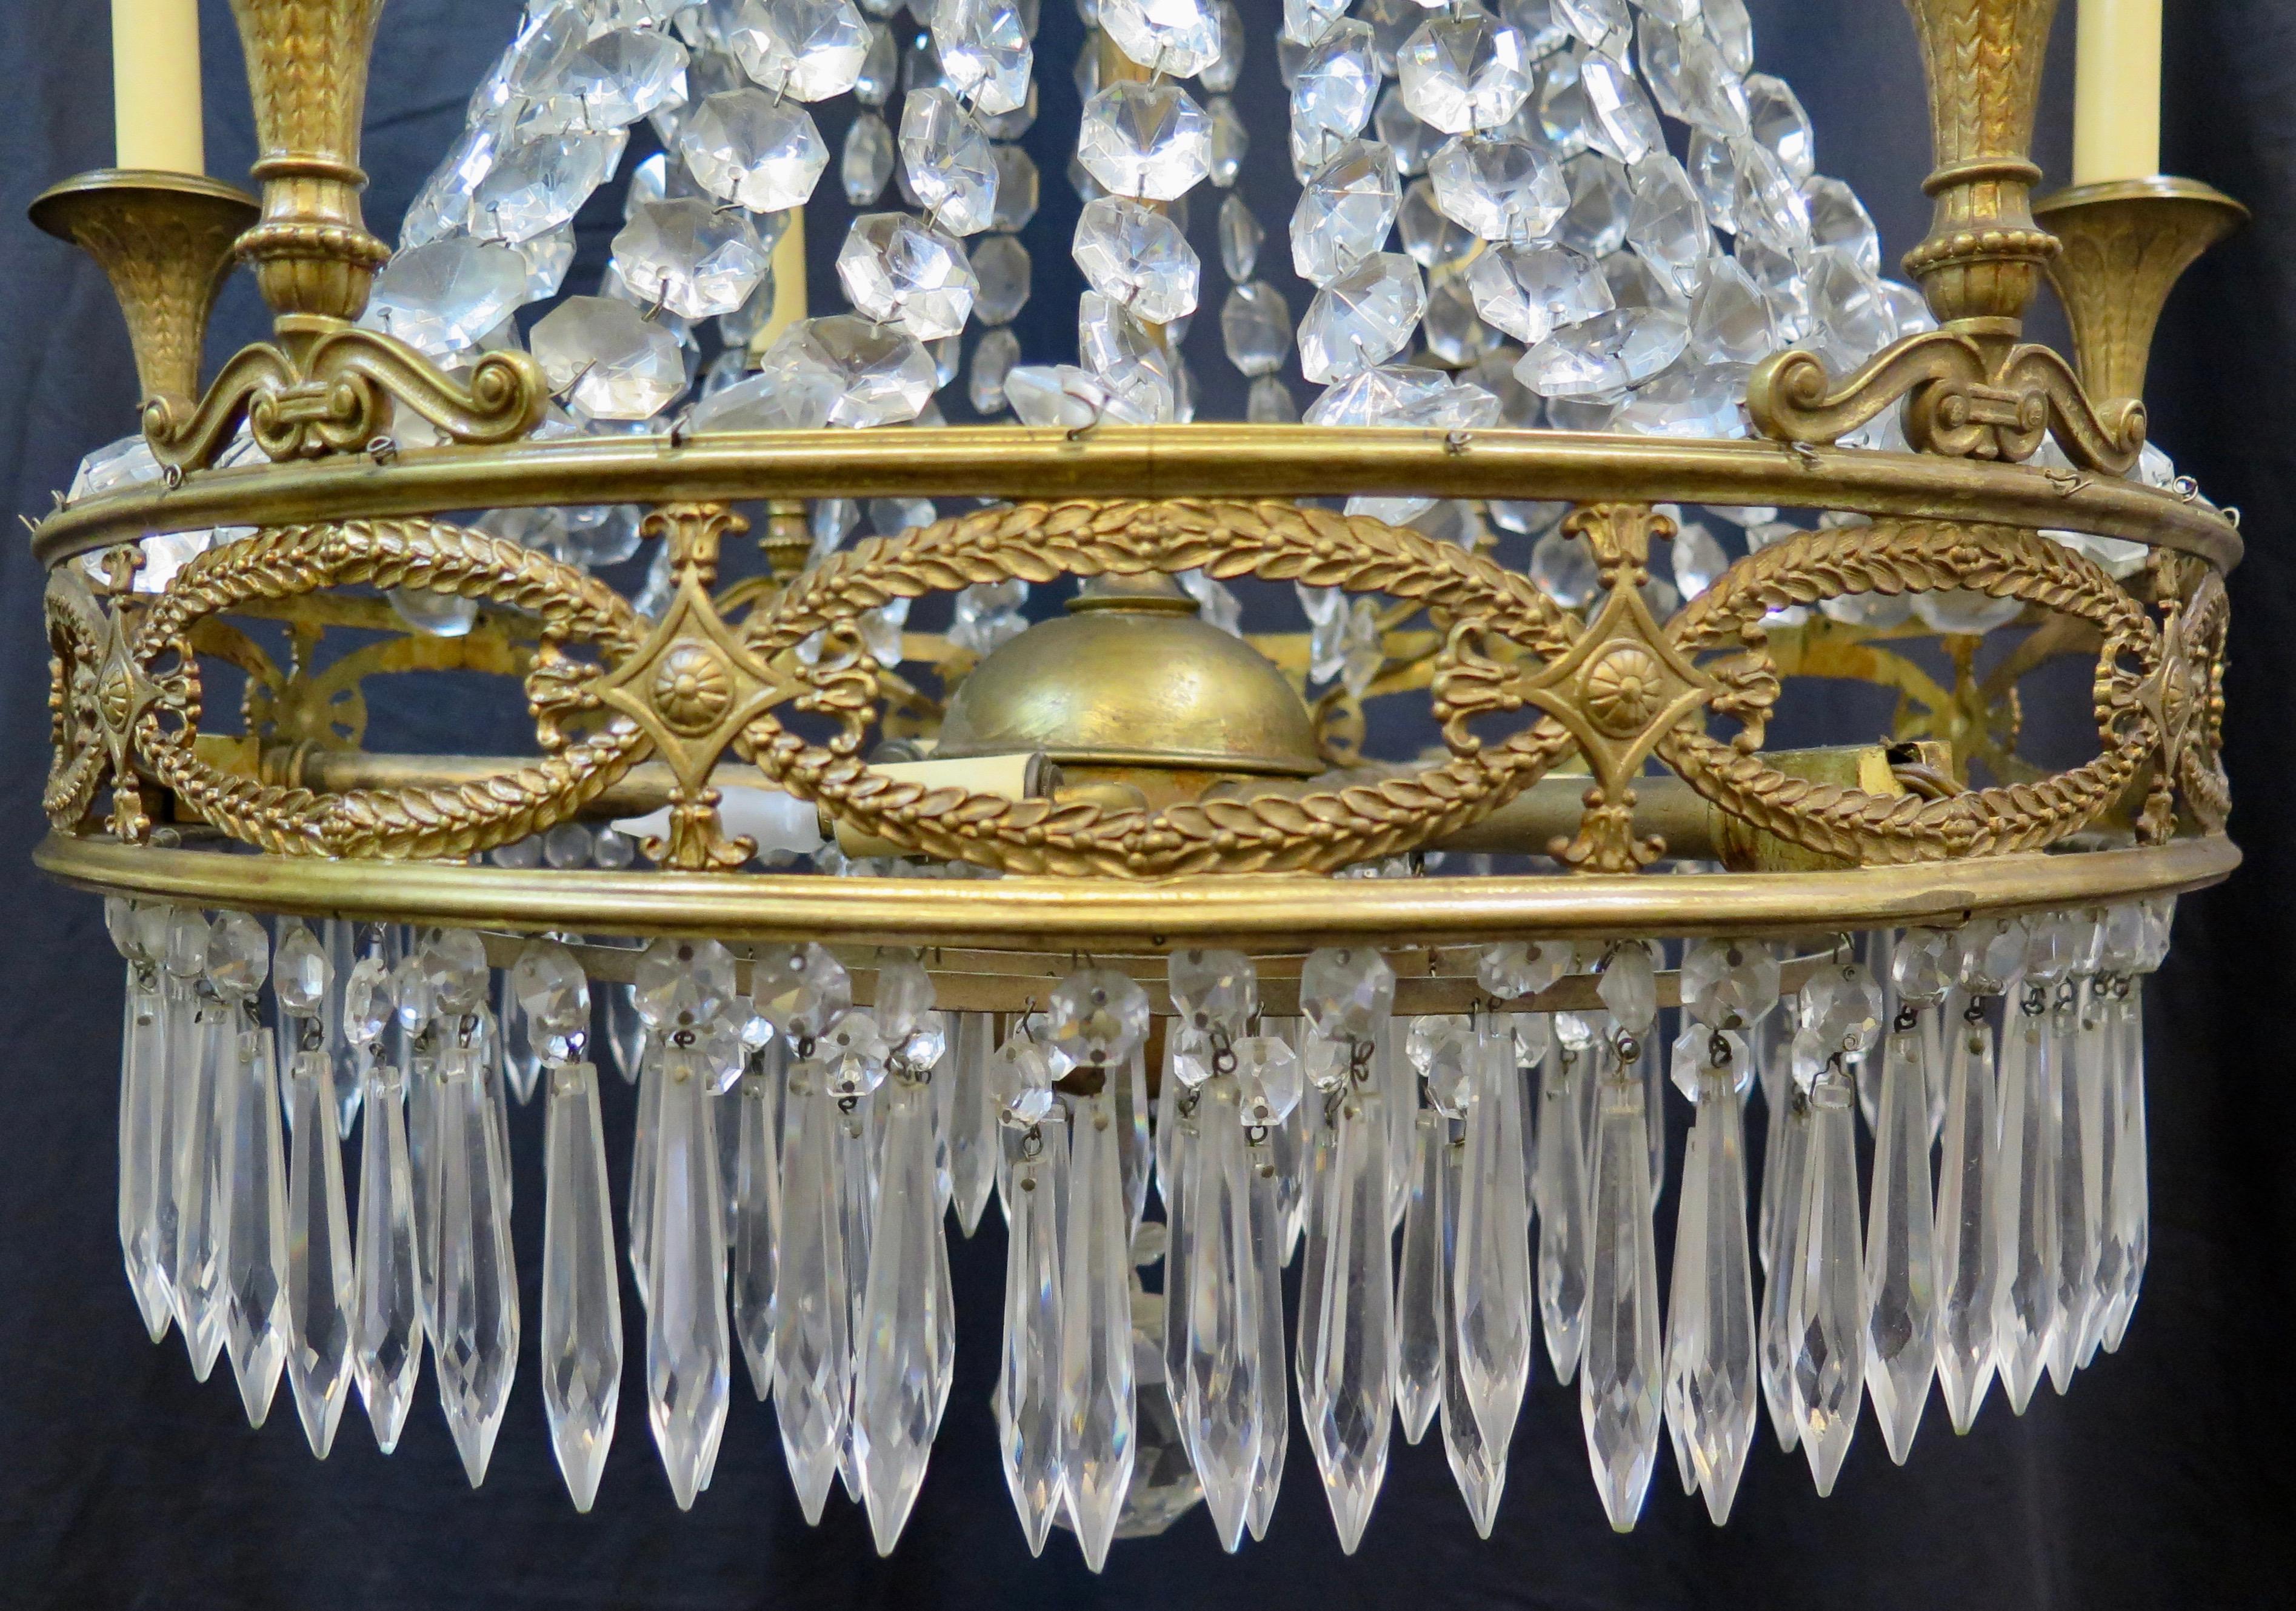 Ce lustre en bronze doré et cristal français de la fin du 19e siècle est magnifiquement conçu comme un élégant lustre de salle à manger formelle. Il est orné de guirlandes de cristal qui descendent en cascade d'une couronne décorative en bronze. Une